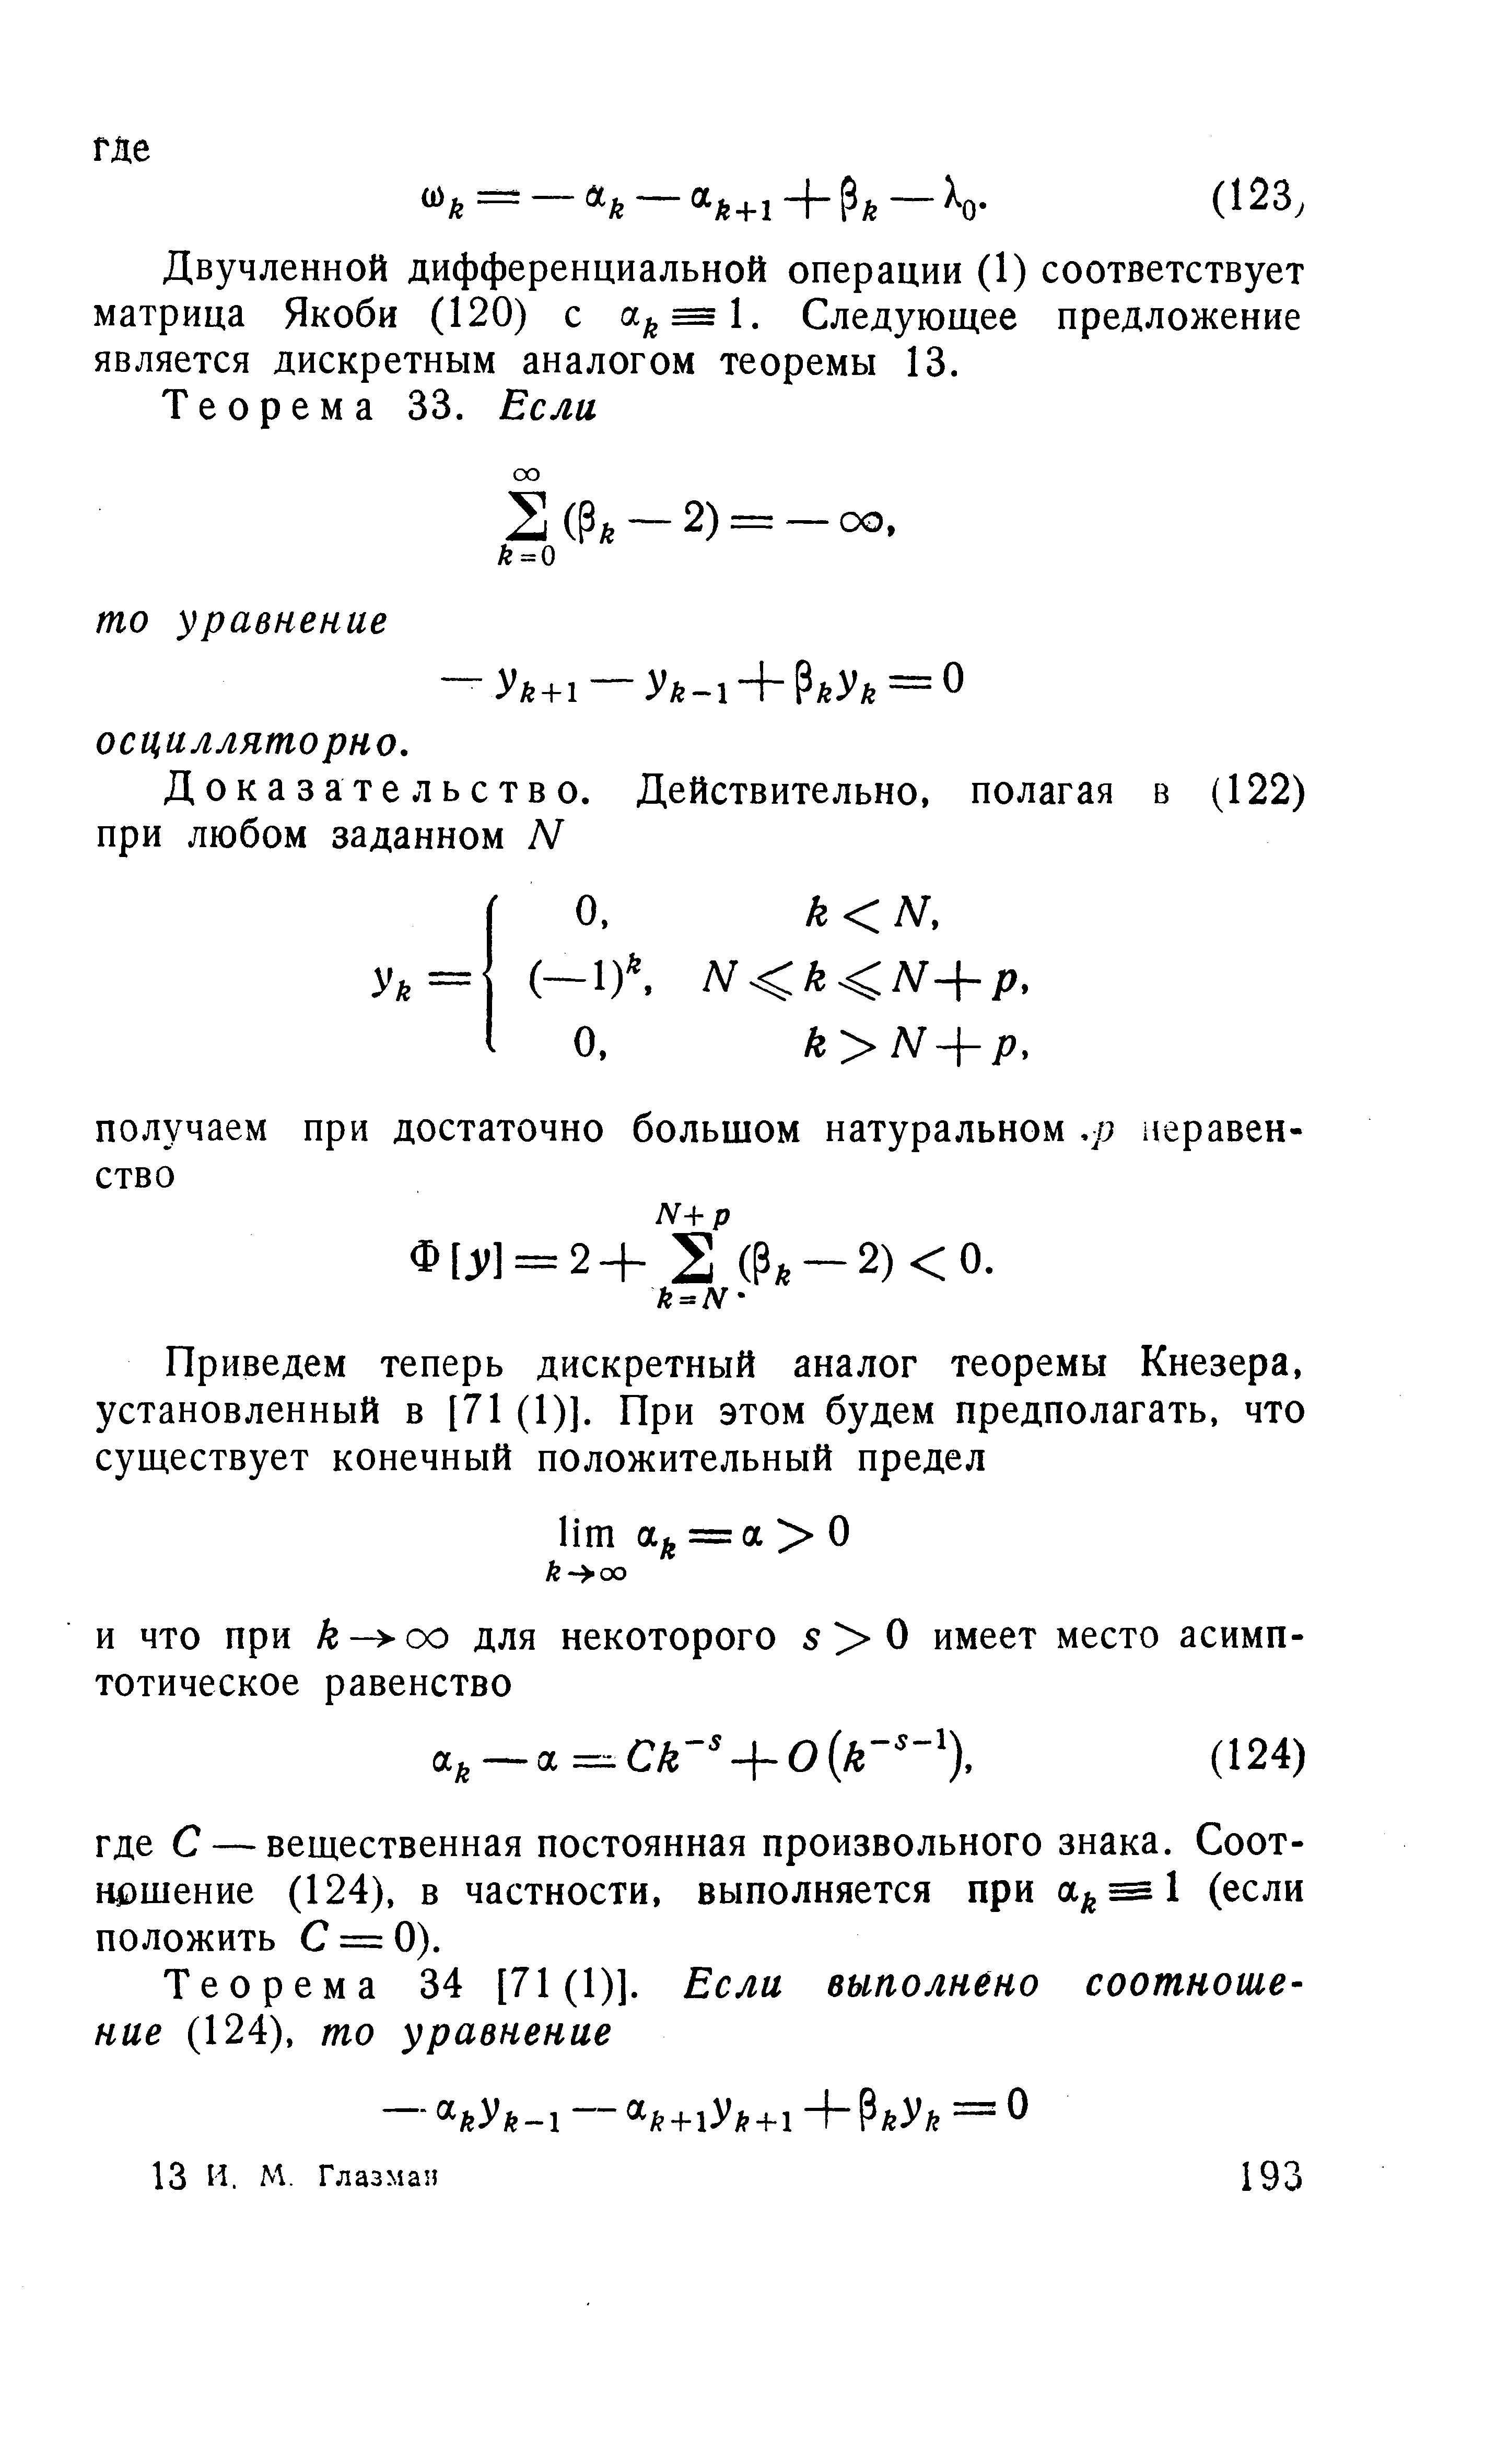 Двучленной дифференциальной операции (1) соответствует матрица Якоби (120) с а = 1. Следующее предложение является дискретным аналогом теоремы 13.